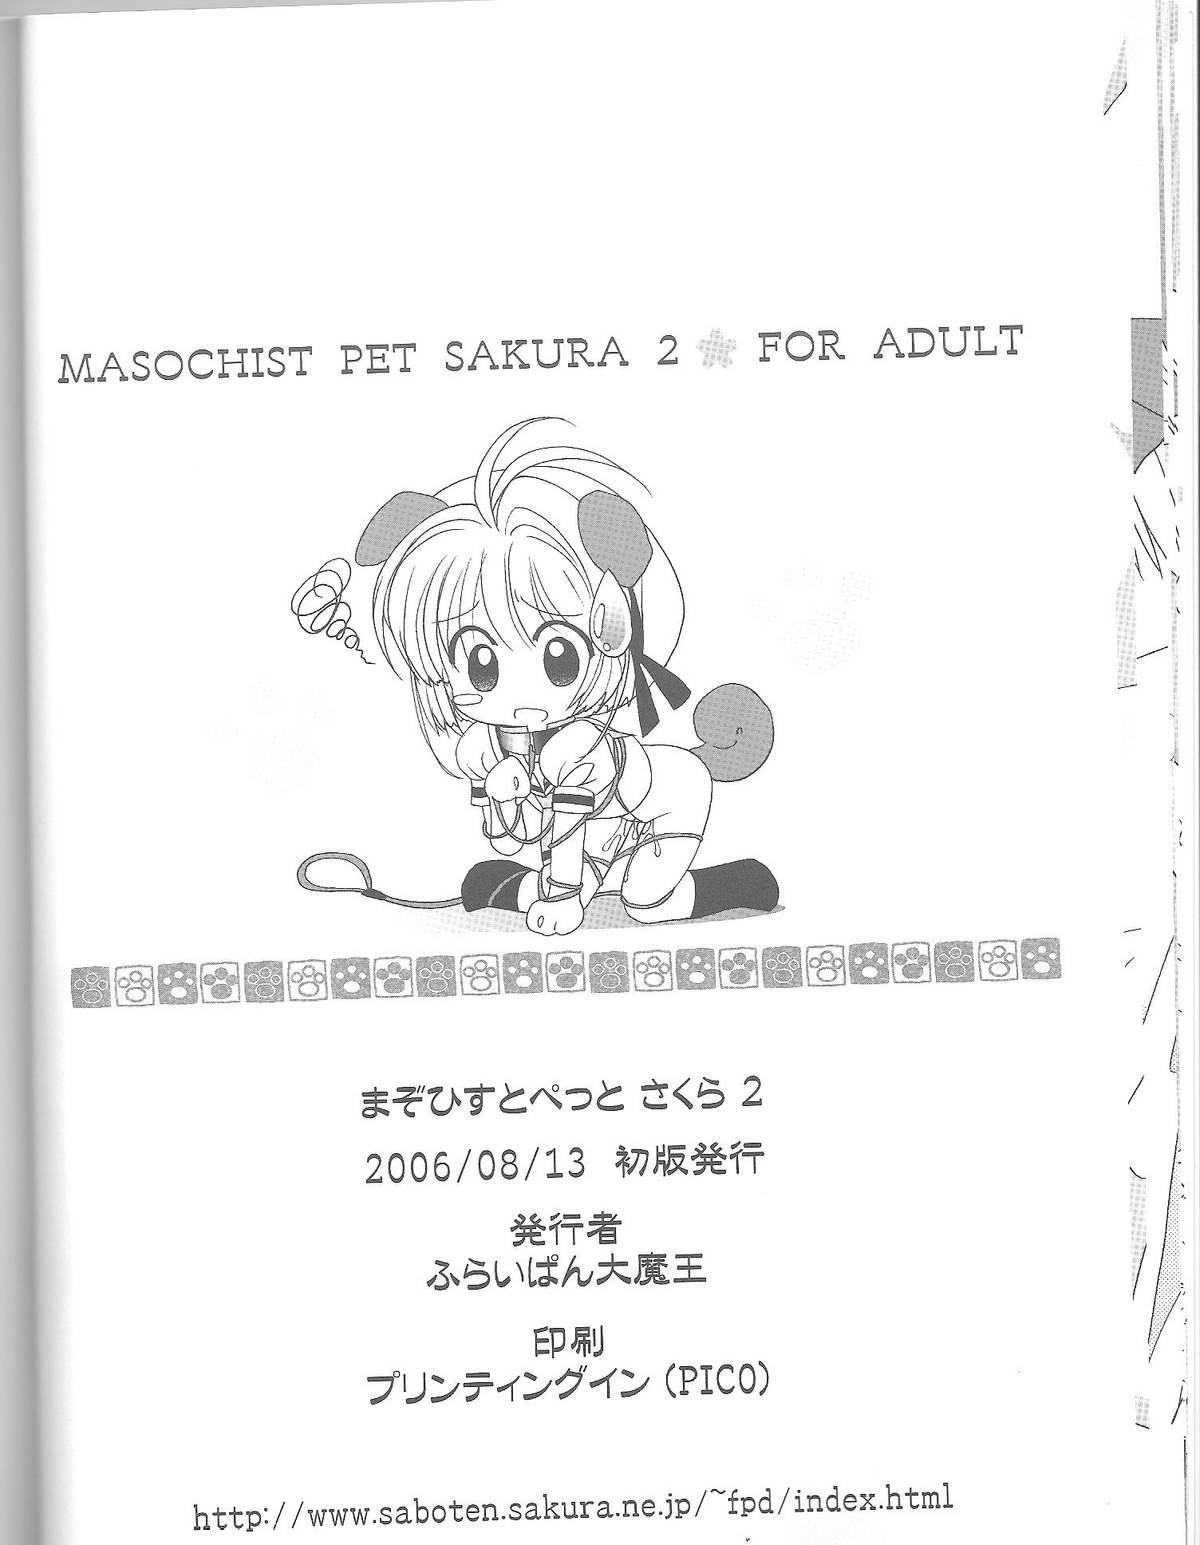 Masochist Pet Sakura 2 16